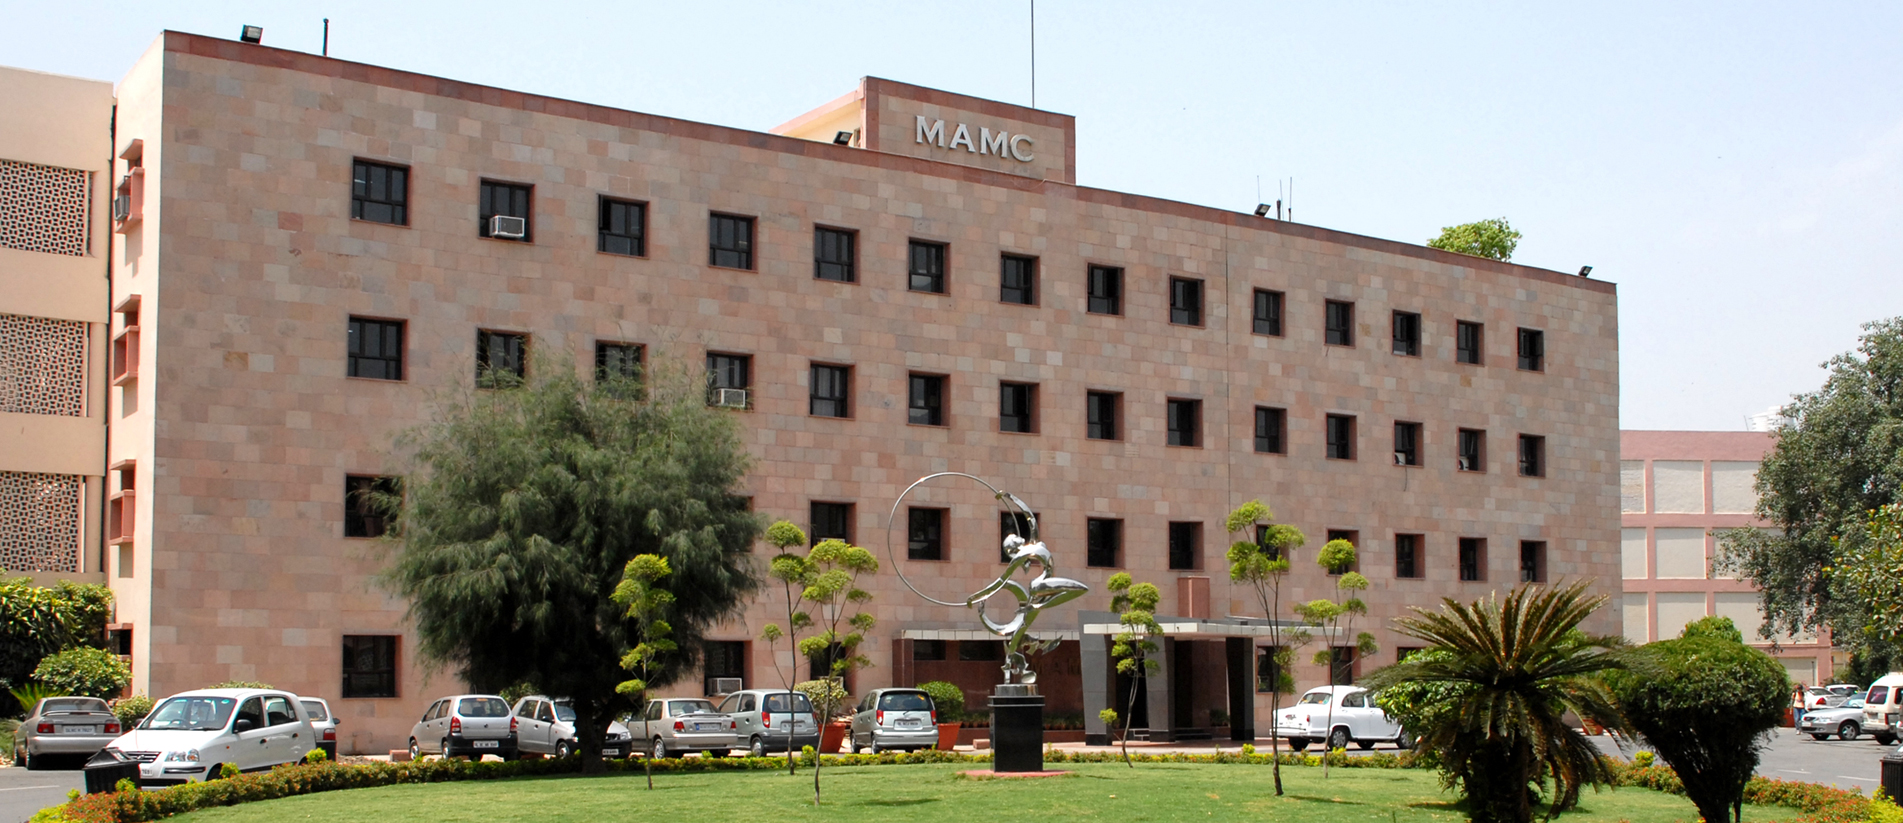 Anwer Khan Modern Medical College (AKMMC)